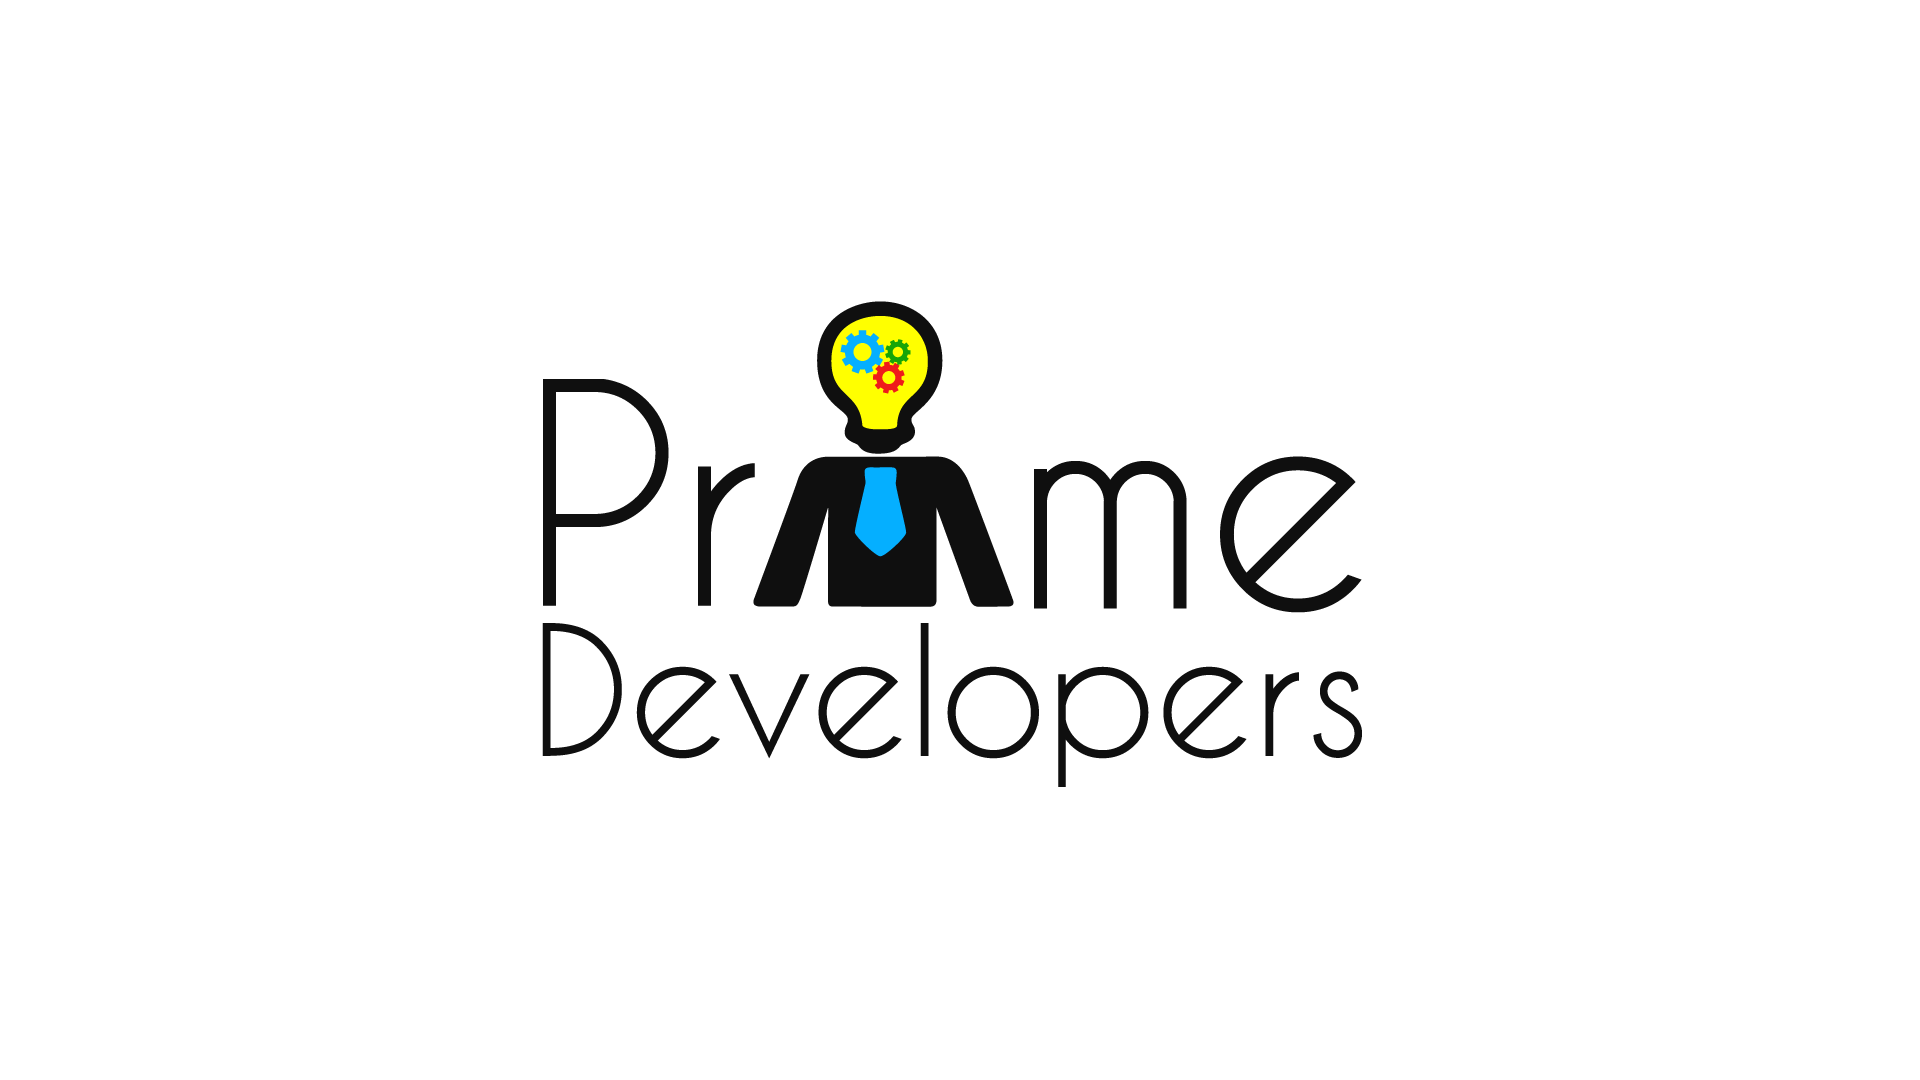 Logotipo de Prime Developers. Las letras de "Prime Developers"
                    en color negro, la letra I es reemplazada por una forma que representa un oficinista con los bordes en
                    color negro, corbata azul y la cabeza con forma de ampolleta con los colores amarillo, verde y rojo